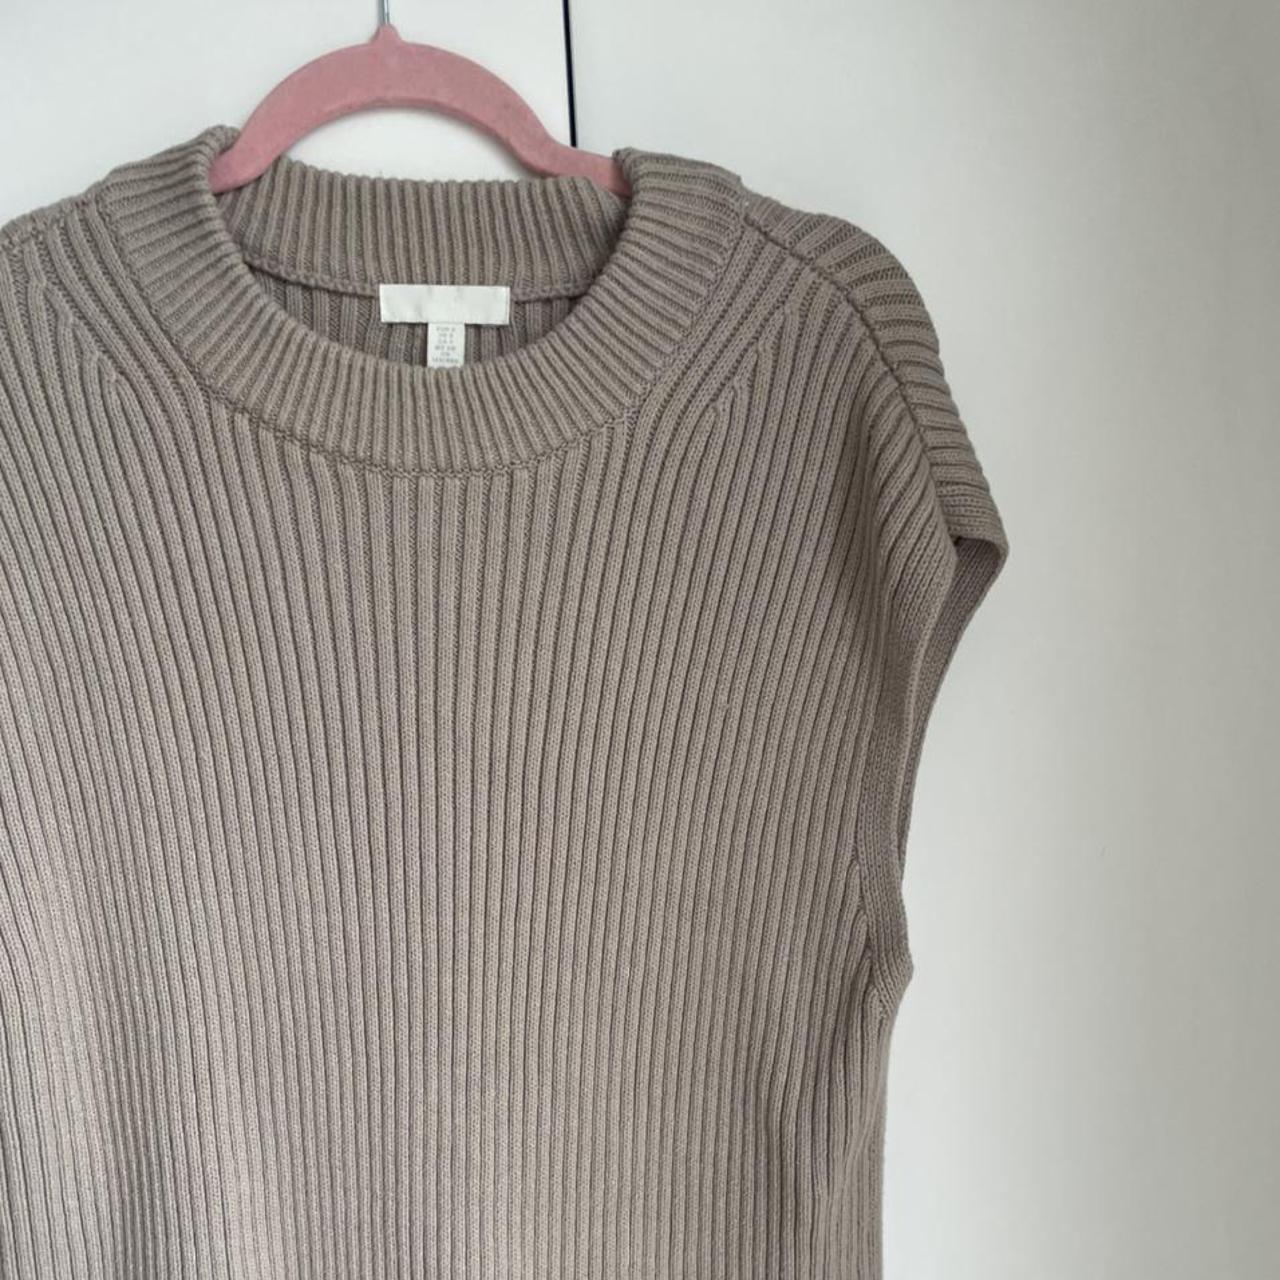 H&M oversize ribbed knit sweater vest. Size S. - Depop